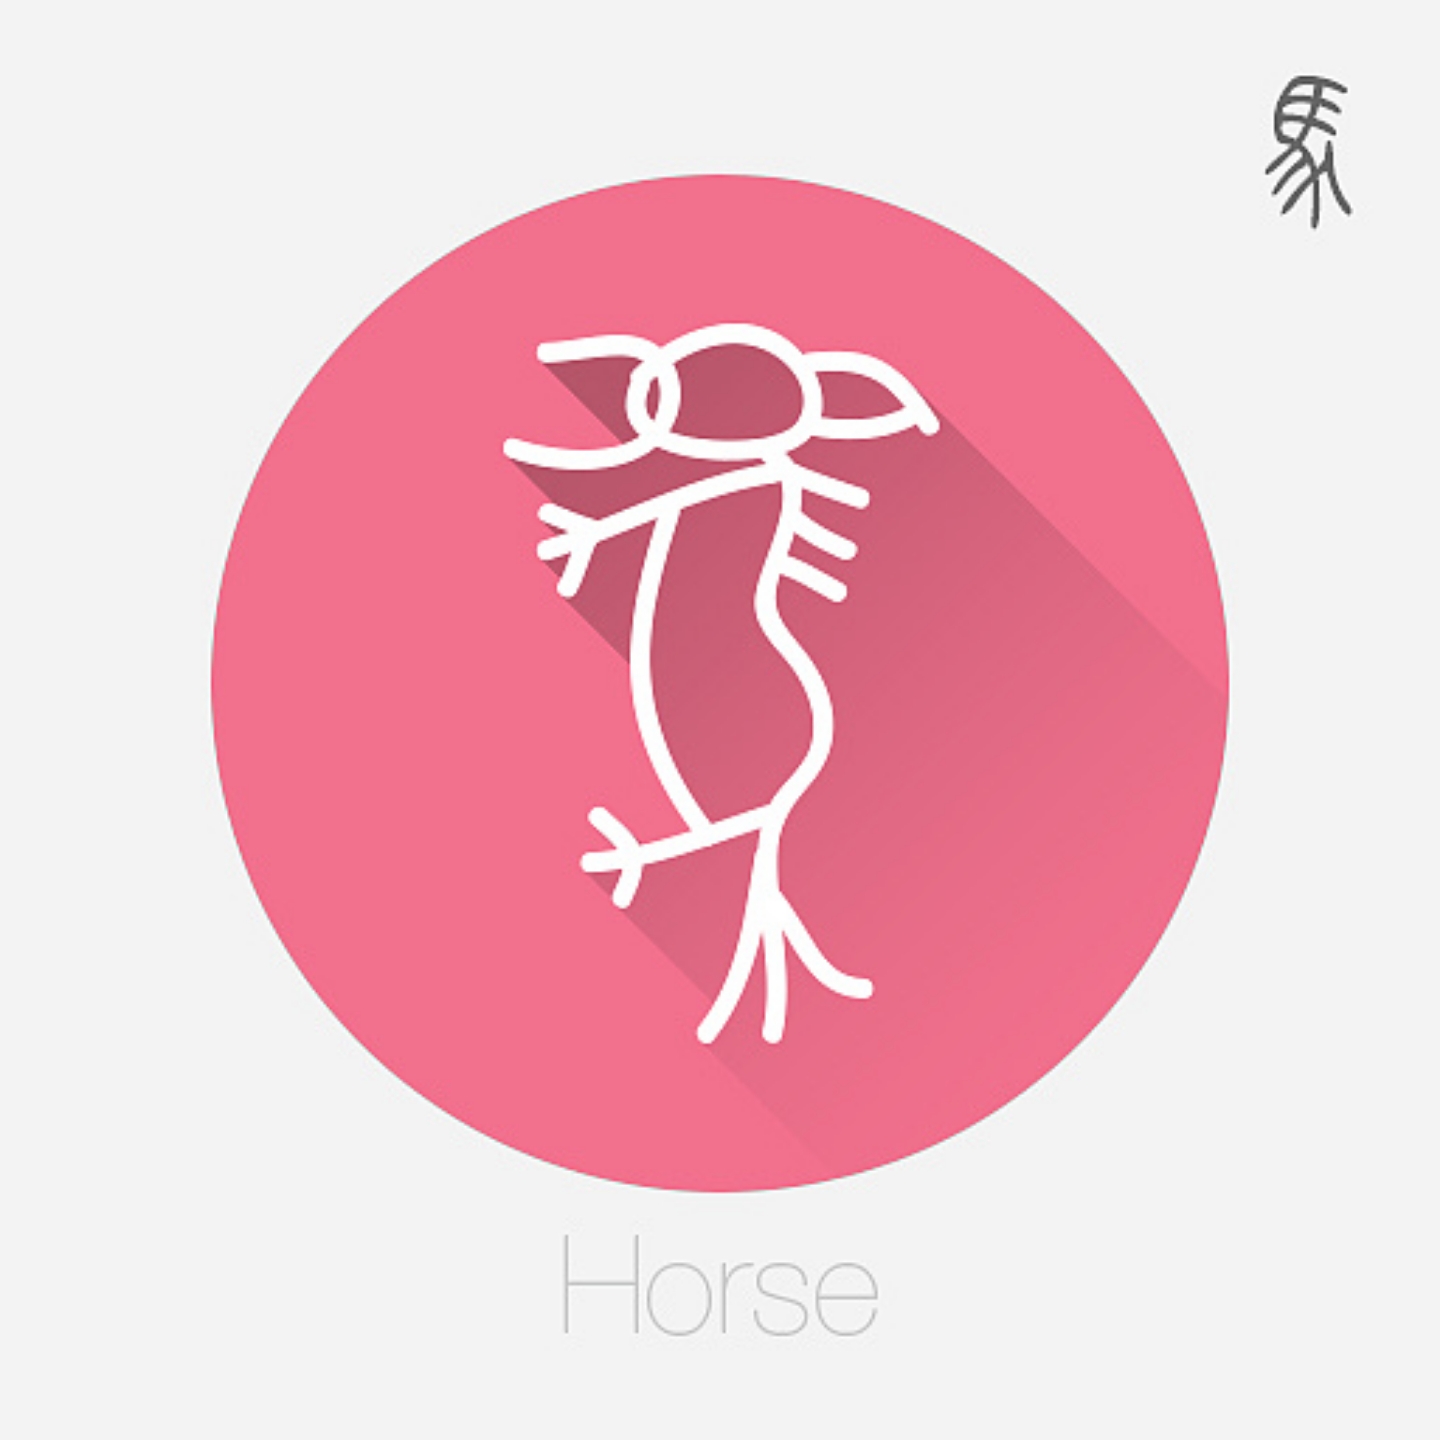 十二生肖文字设计之甲骨文(二)——马